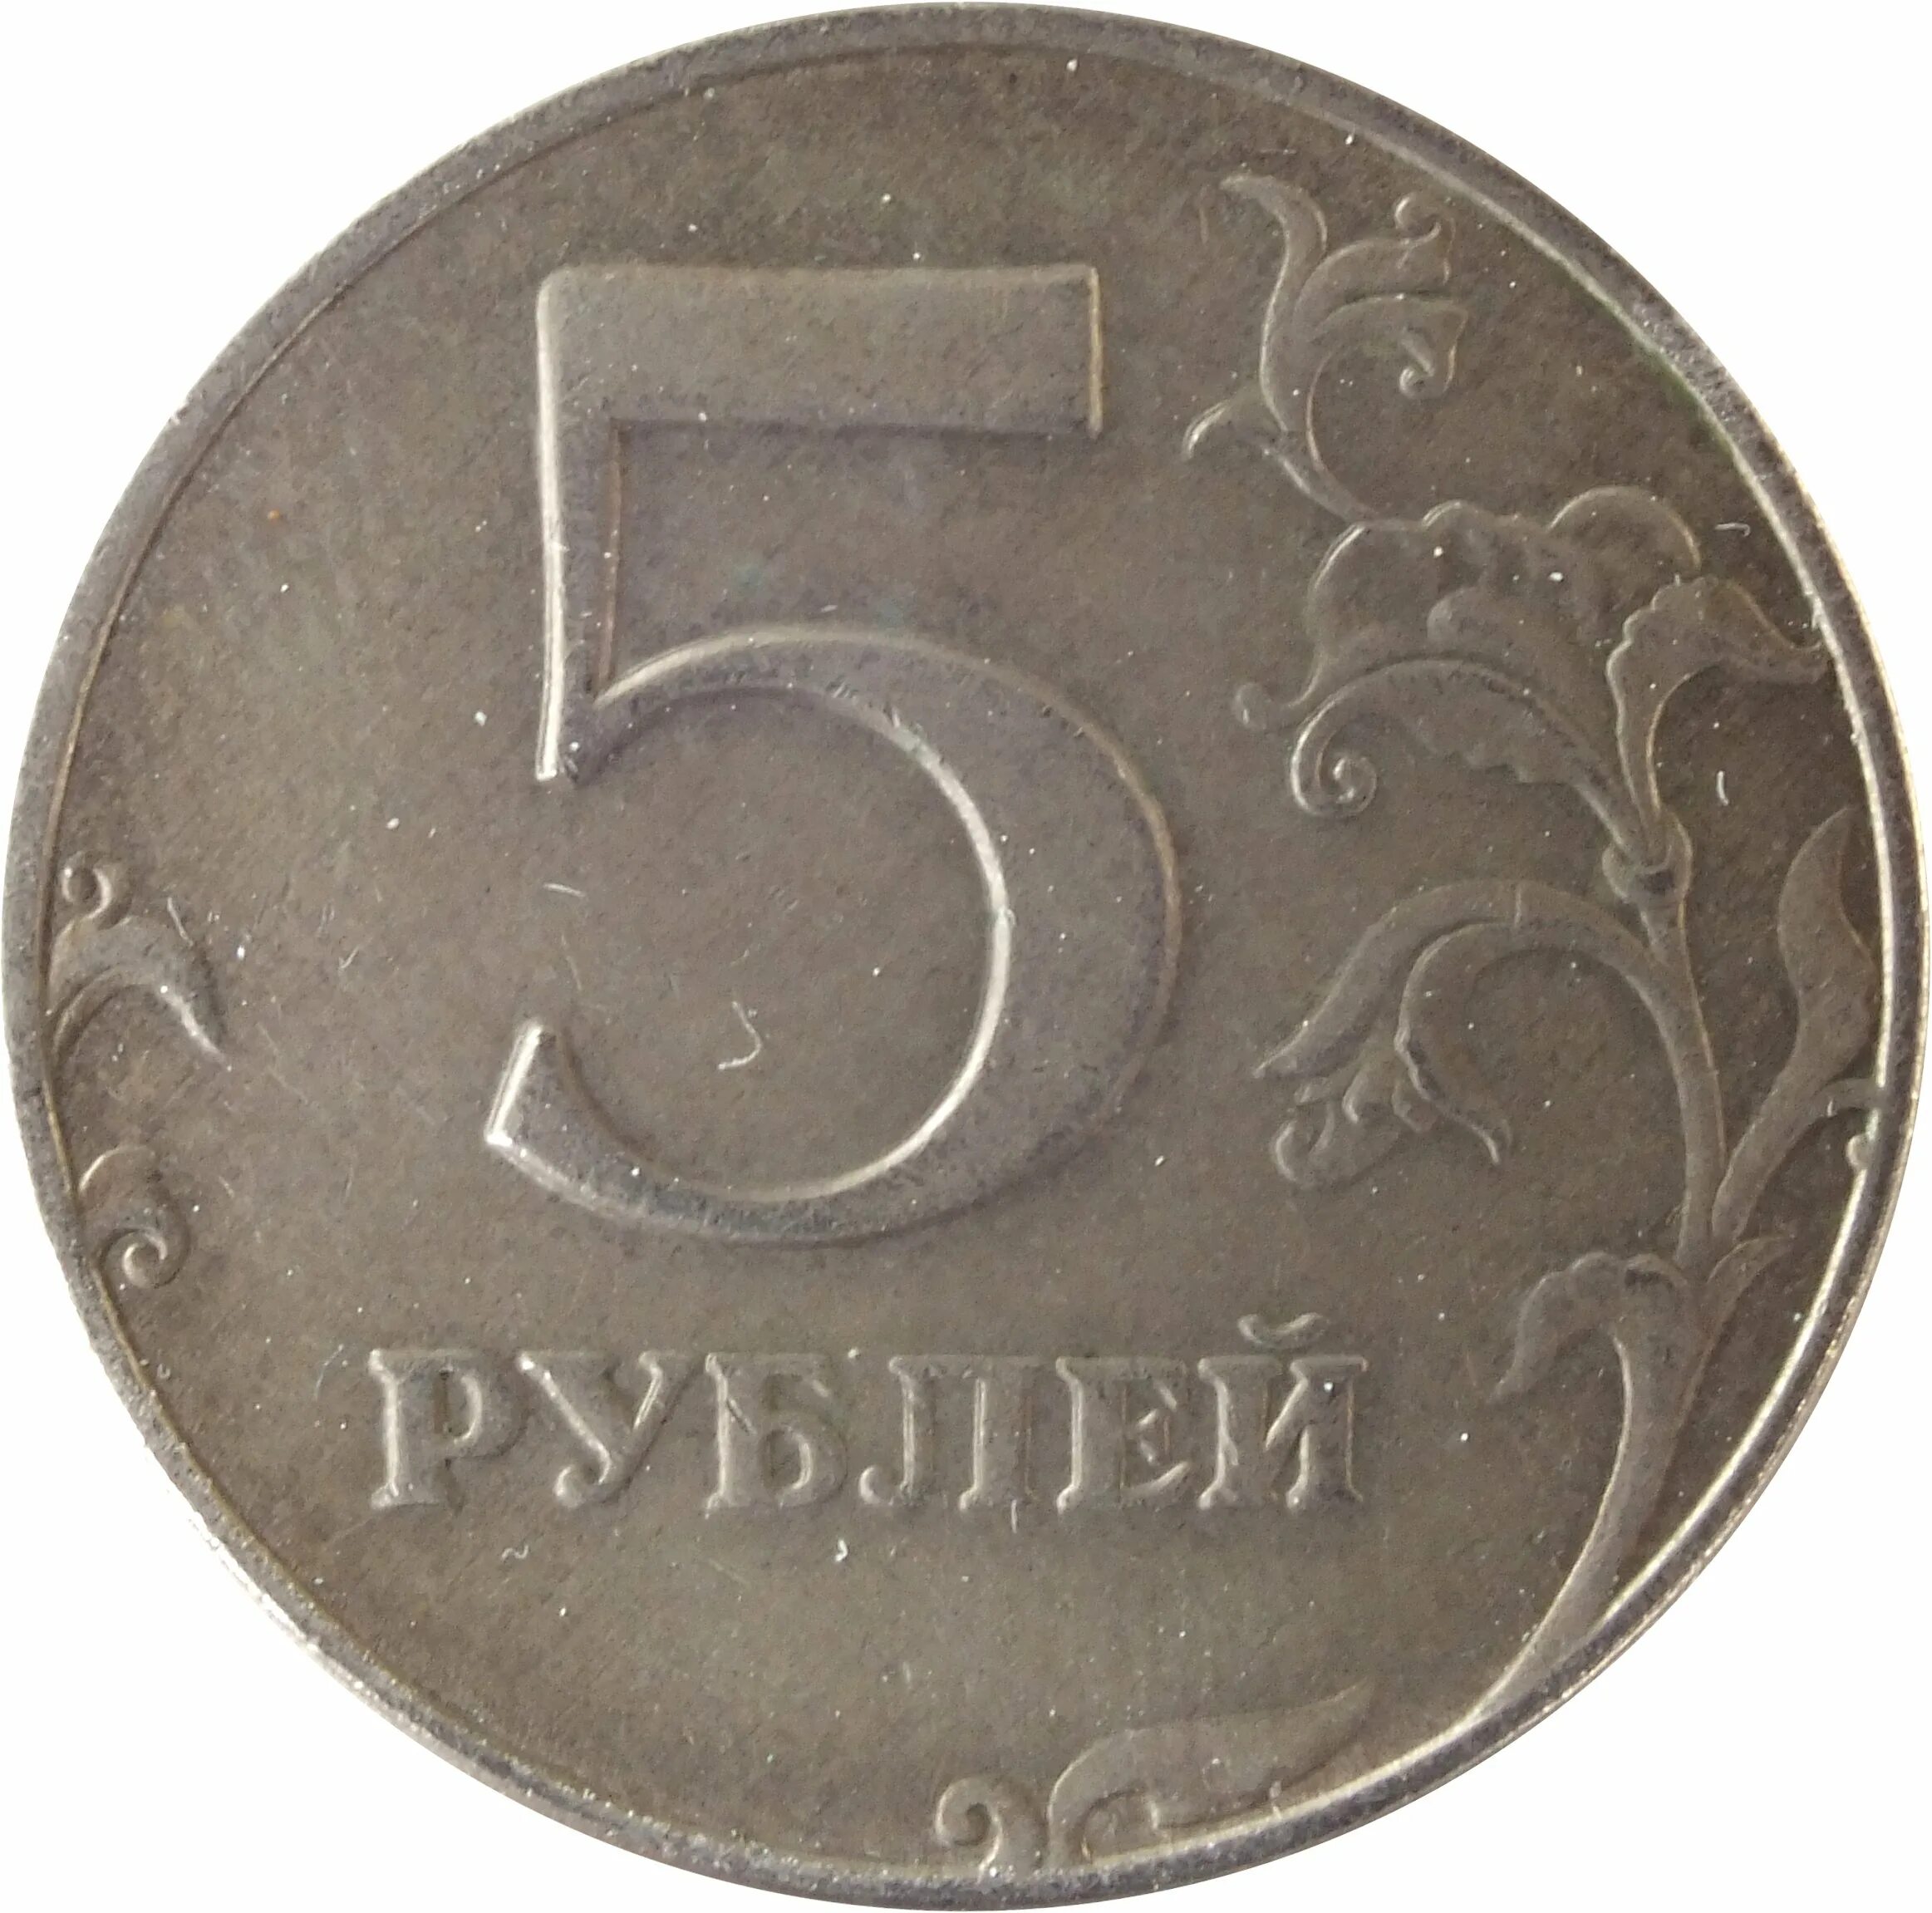 5 рублей повышенной. Монета 5 рублей. Монета 5 рублей реверс. Монета "5 рублей 1907 года". Монета 5 рублей без фона.